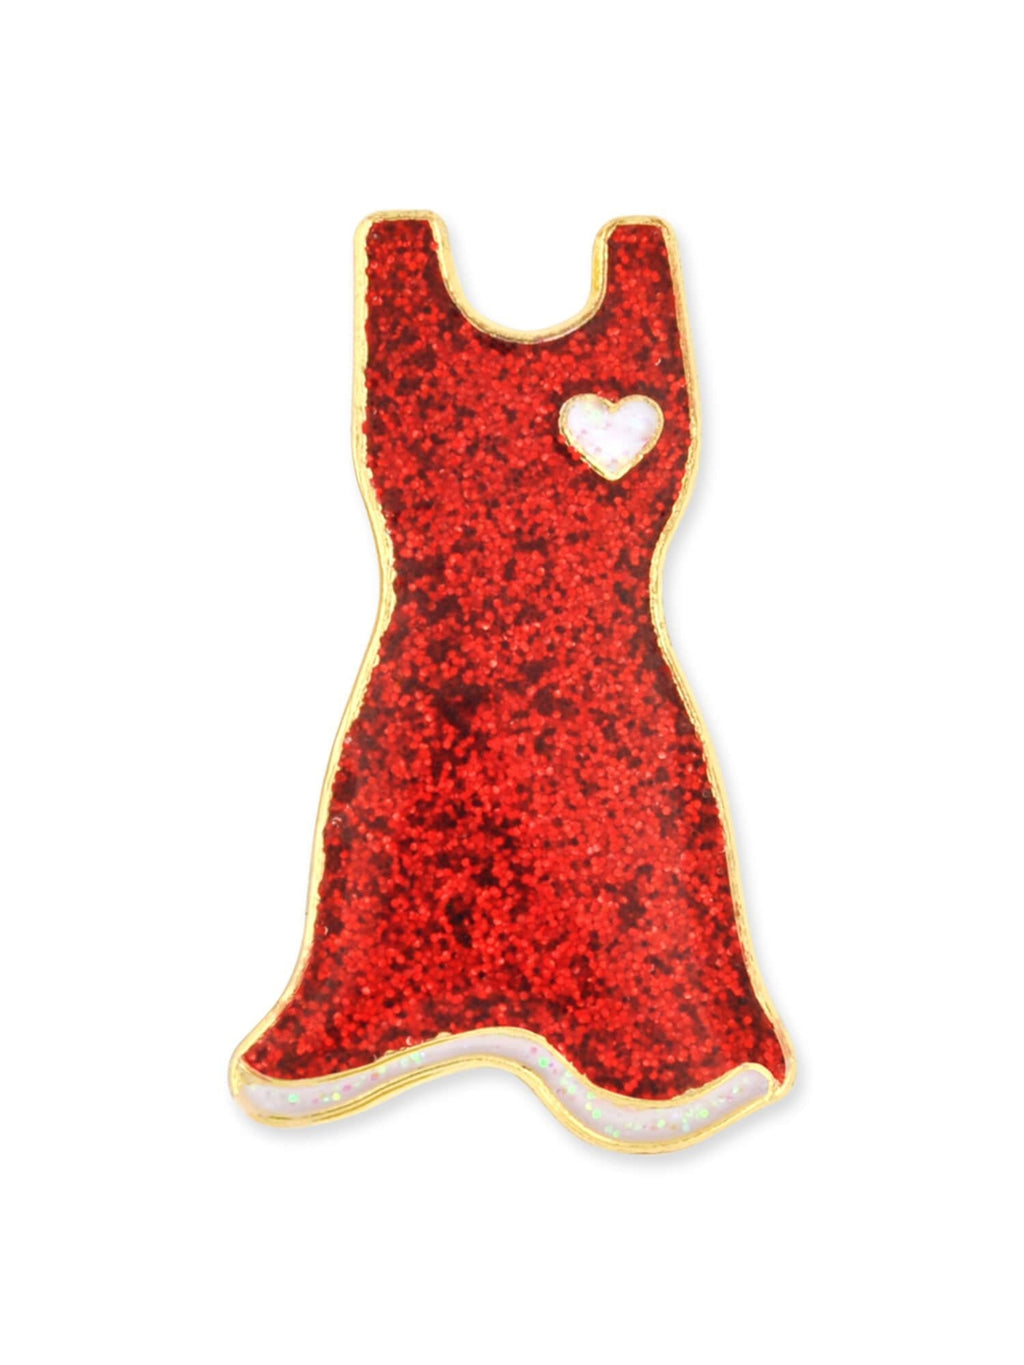 [Australia] - PinMart Glitter Red Dress American Heart Month Enamel Lapel Pin 1 Piece 